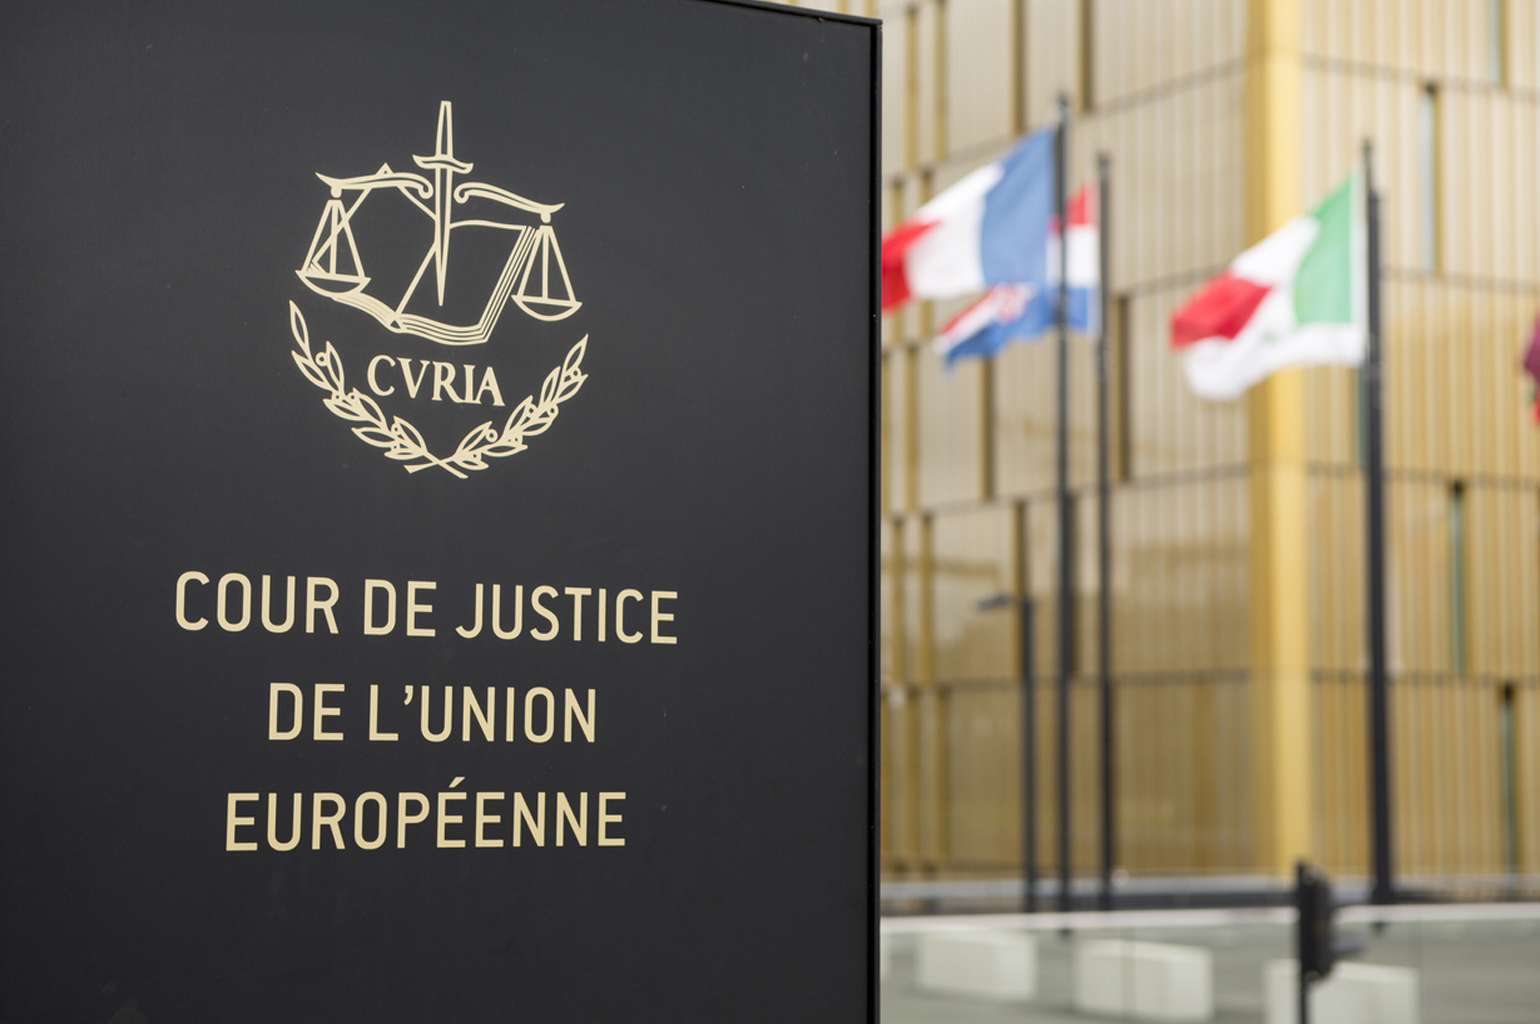 Fotografía Ilustrativa de la Corte de Justicia de la Unión Europea